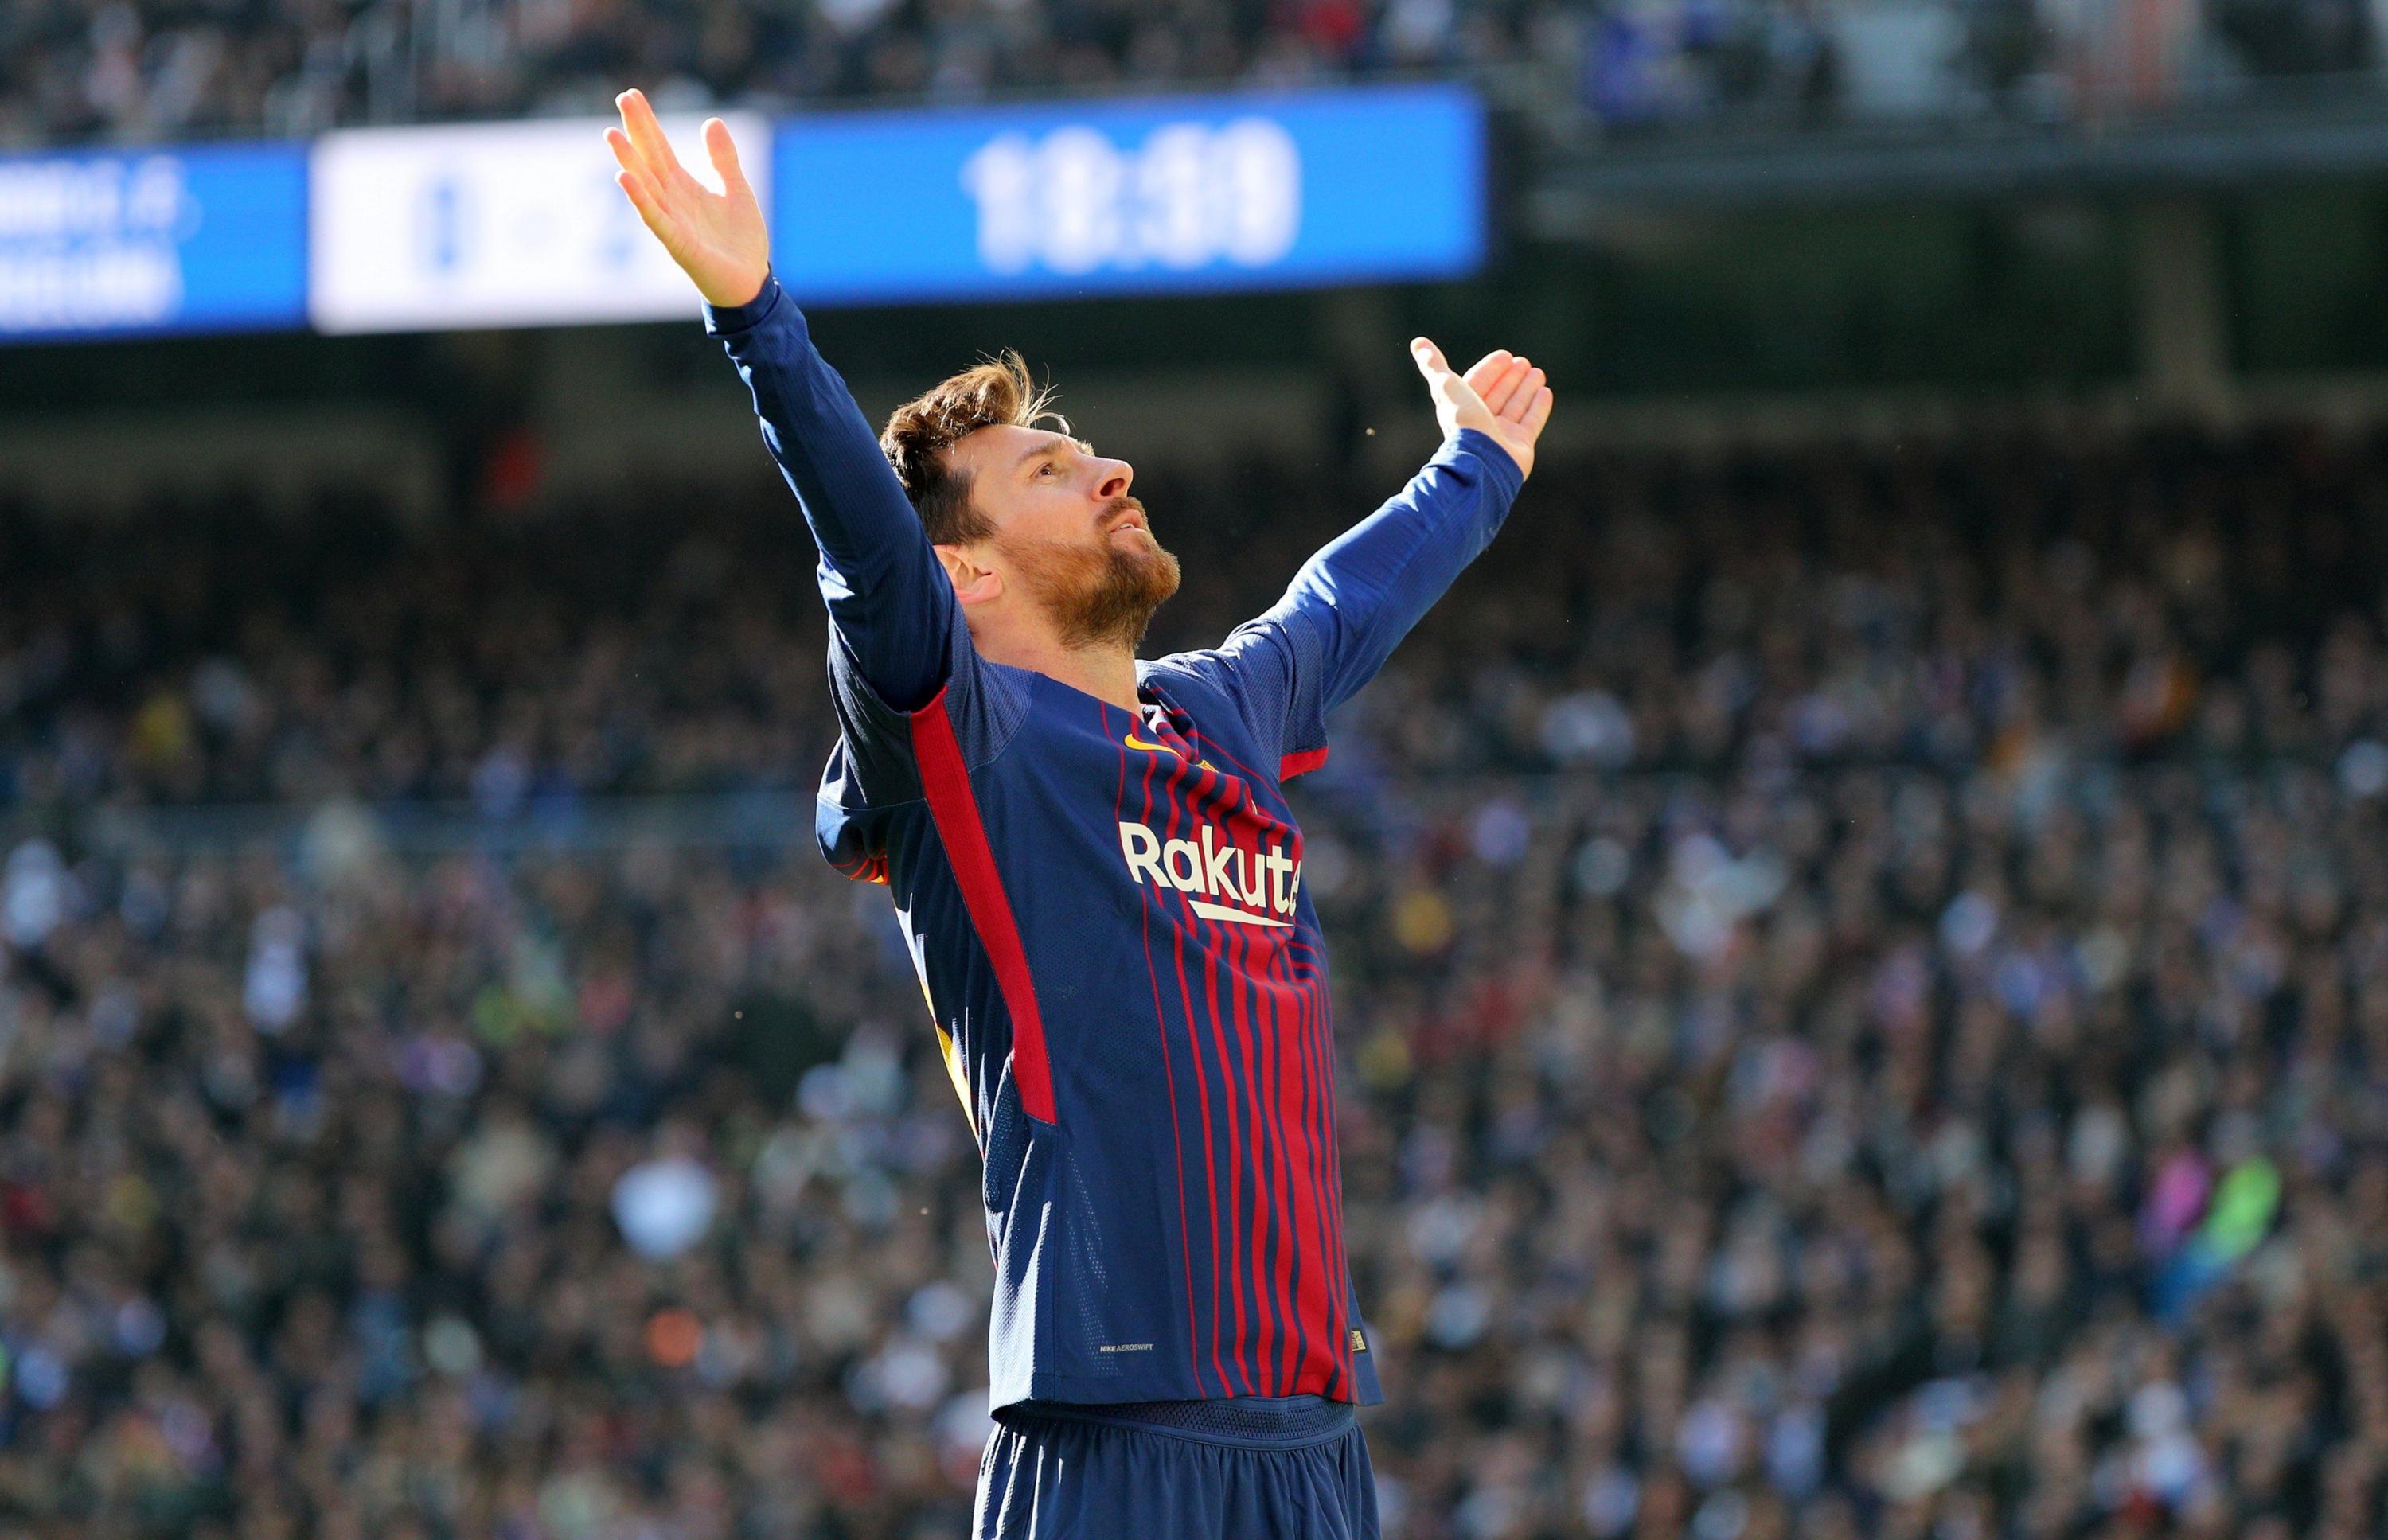 Messi y el récord que alcanzó tras anotar al Madrid de Ronaldo. (Foto: AFP)